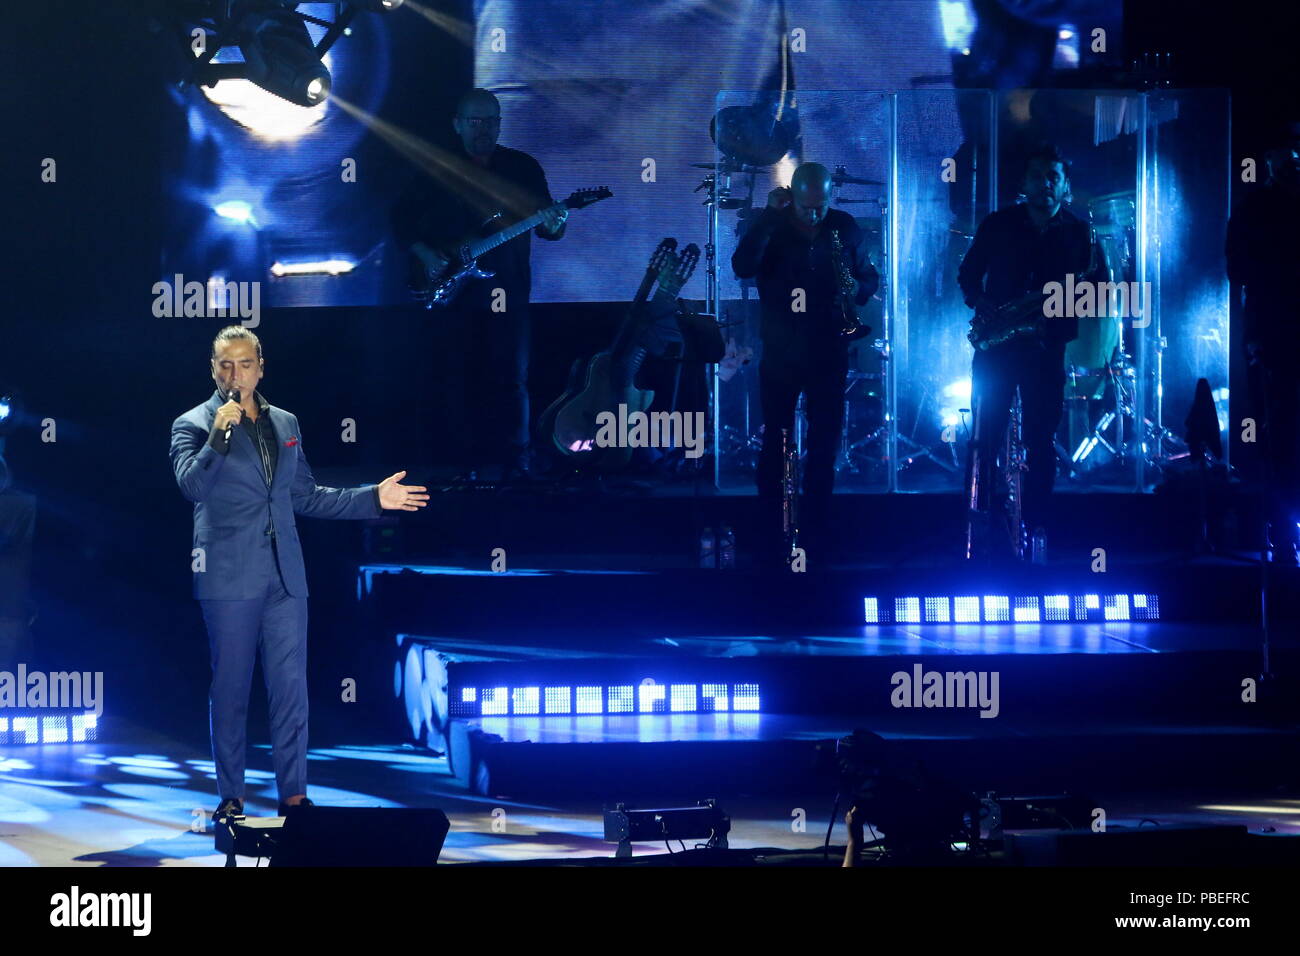 Fuengirola, España. El 27 de julio de 2018. Alejandro Fernández celebra sus  25 años de carrera musical en Fuengirola, donde jugó rancheras, pop,  serreÃ±o y las canciones de Reggaeton, así como canciones